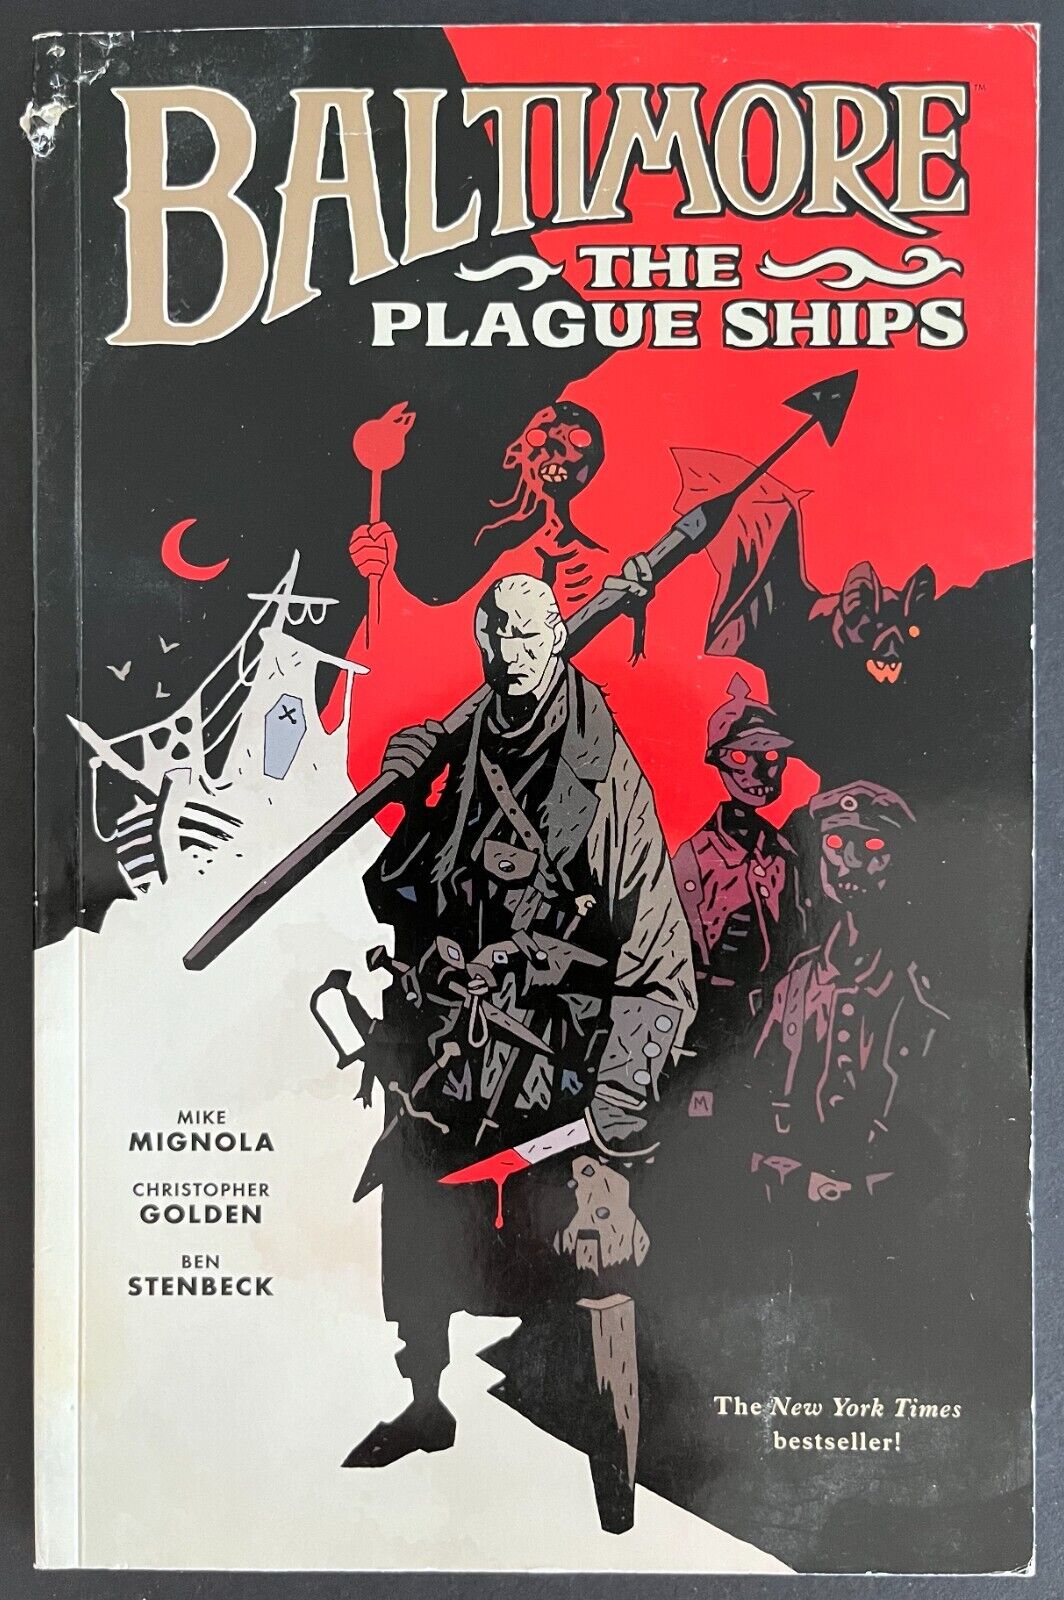 Baltimore: The Plague Ships by Mignola, Golden & Steinbeck (2012, Dark Horse)